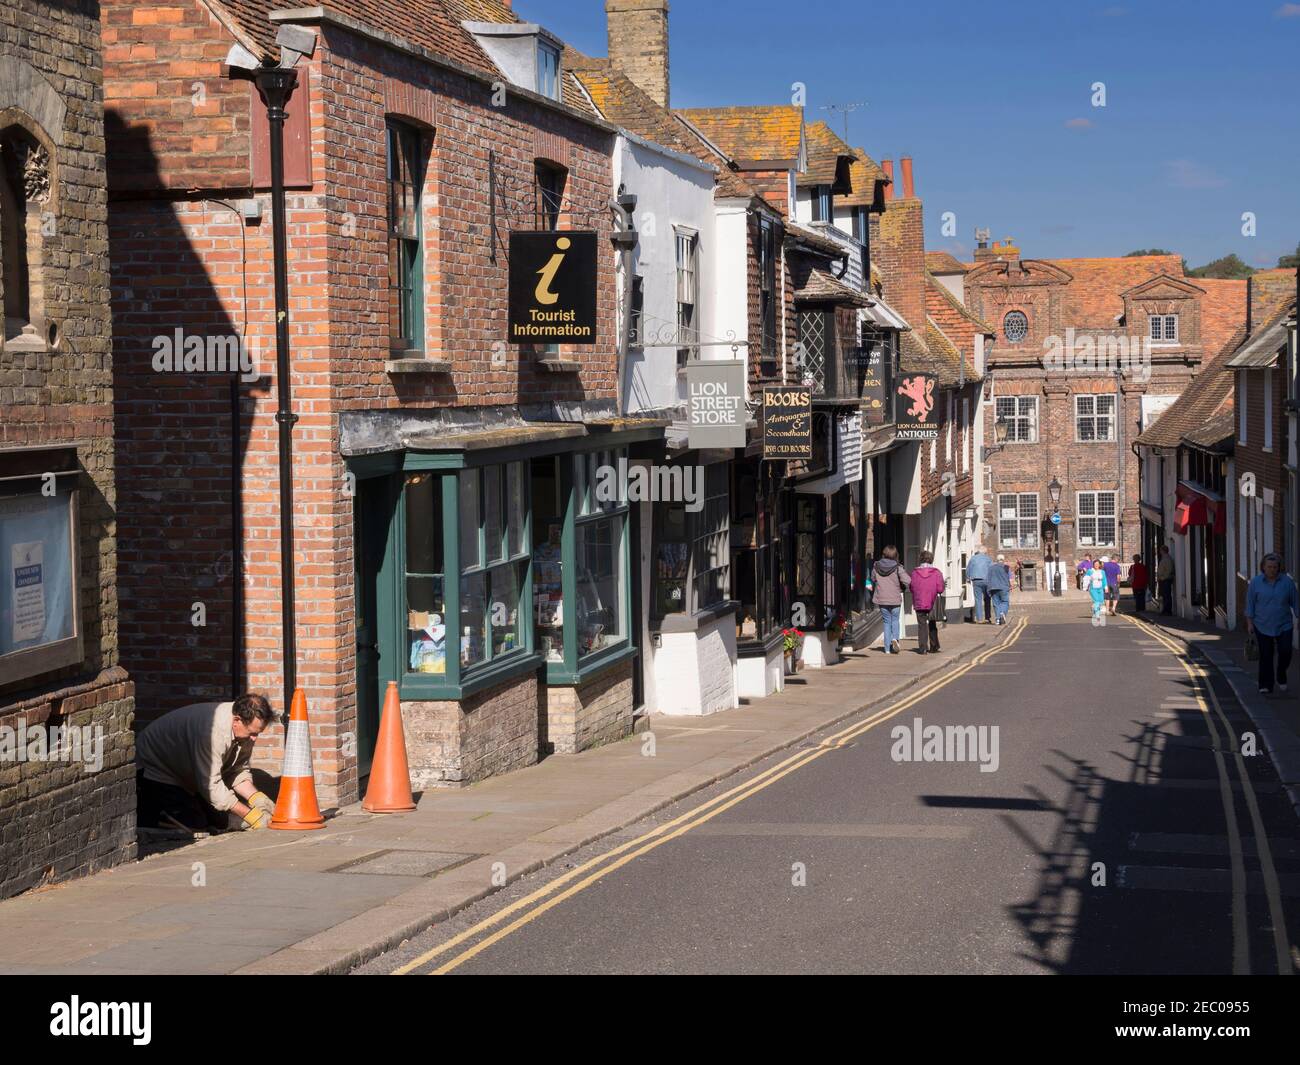 Lion Street, Rye, Sussex. Eine der malerischen Straßen mit malerischen historischen Geschäften und Häusern in der Altstadt von Rye gesäumt. Stockfoto